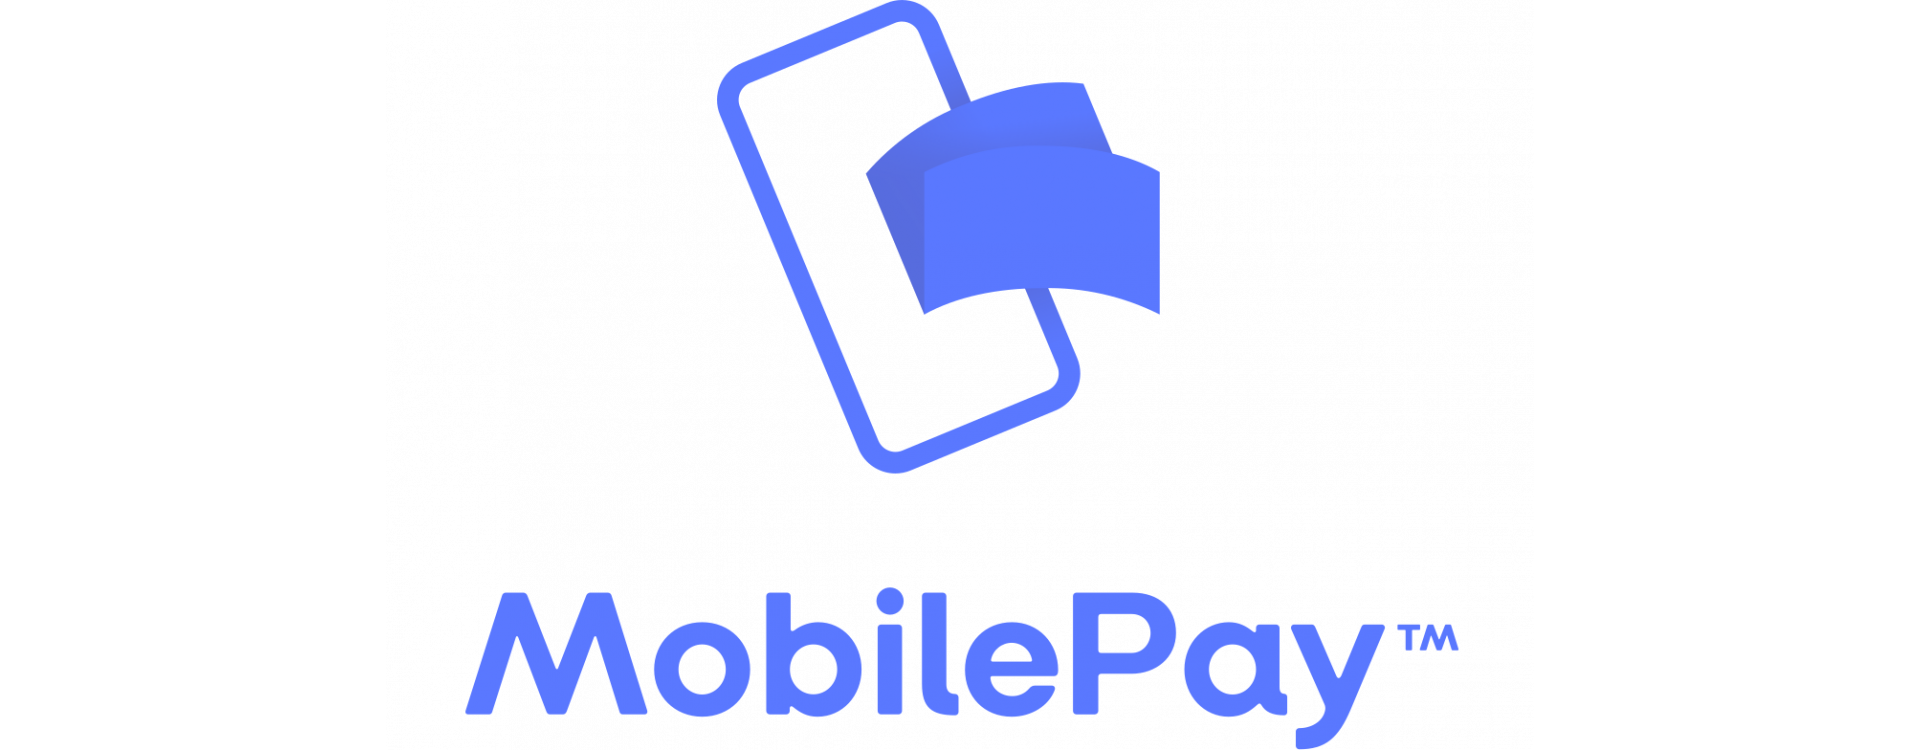 Ahora puedes pagar tu pedido con MobilePay